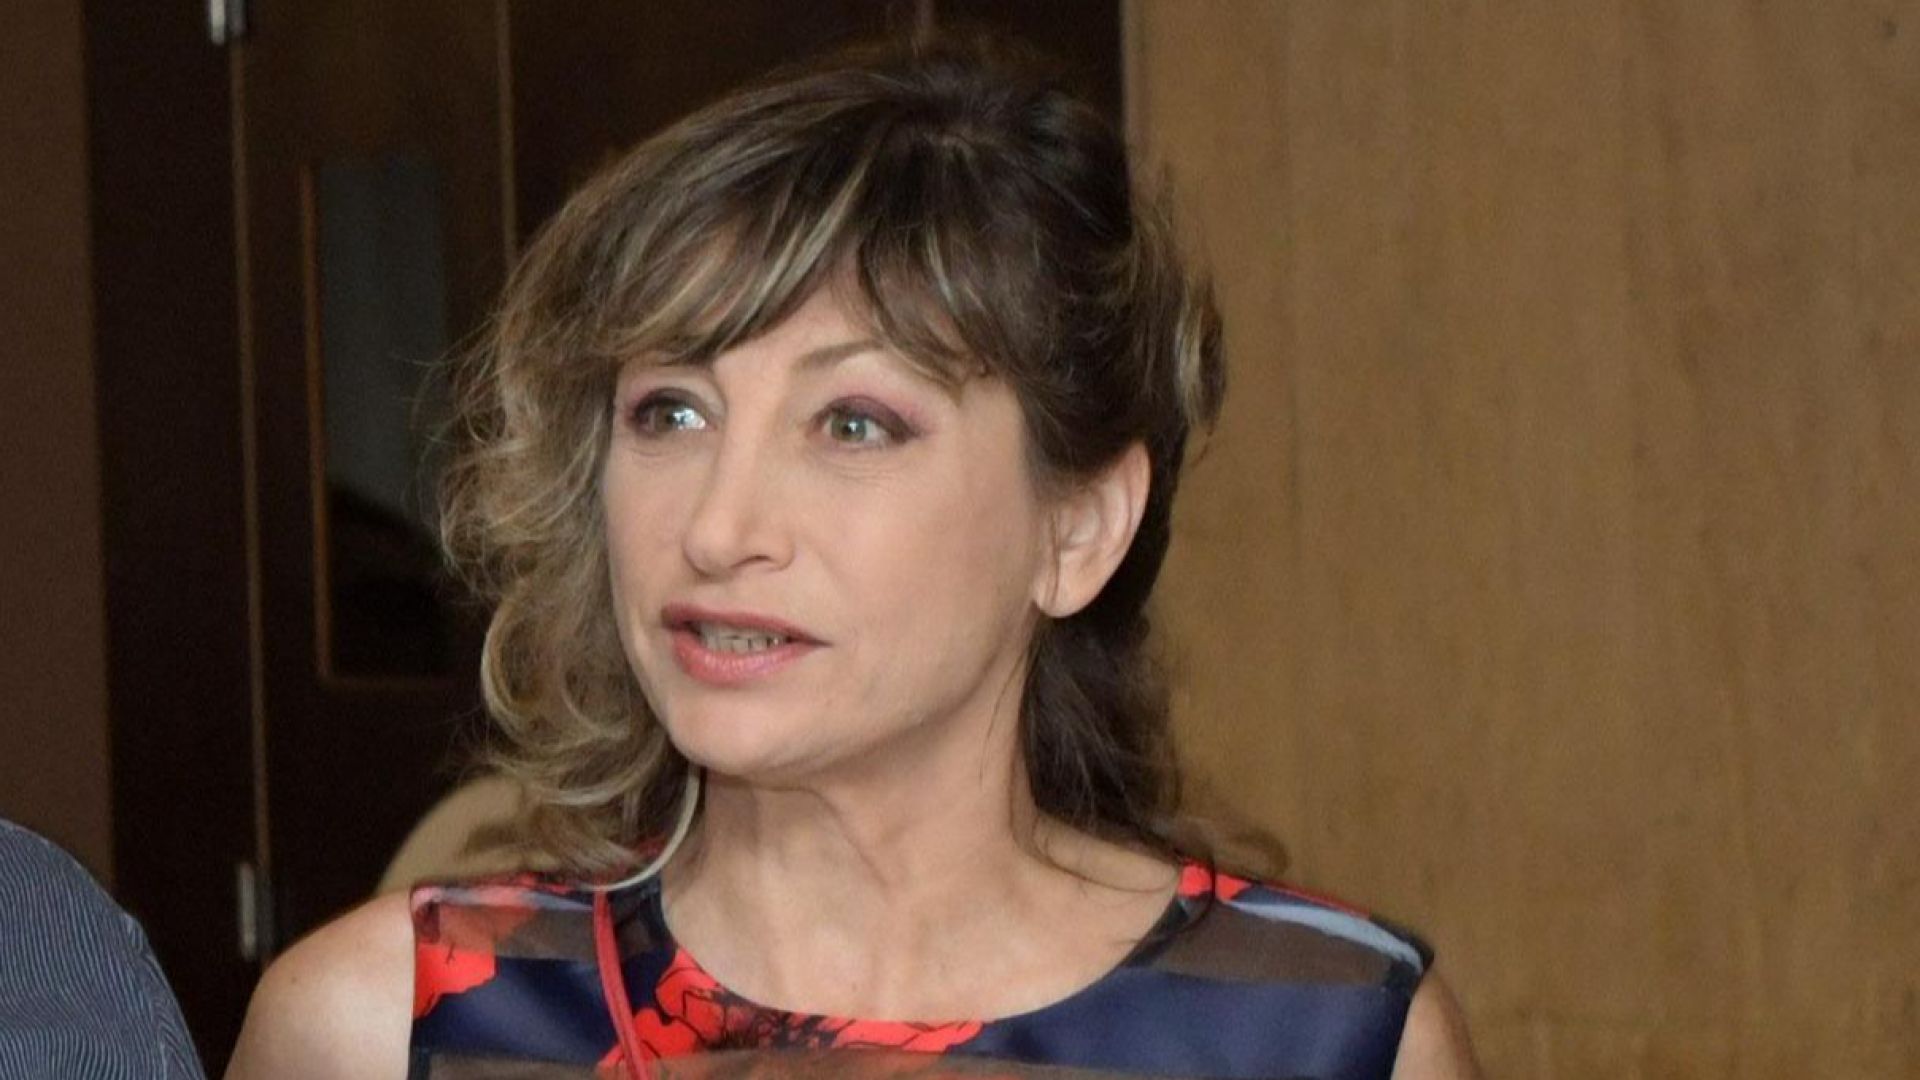 Мира Радева:  Много вероятно е да кристализира център на властта около президента 